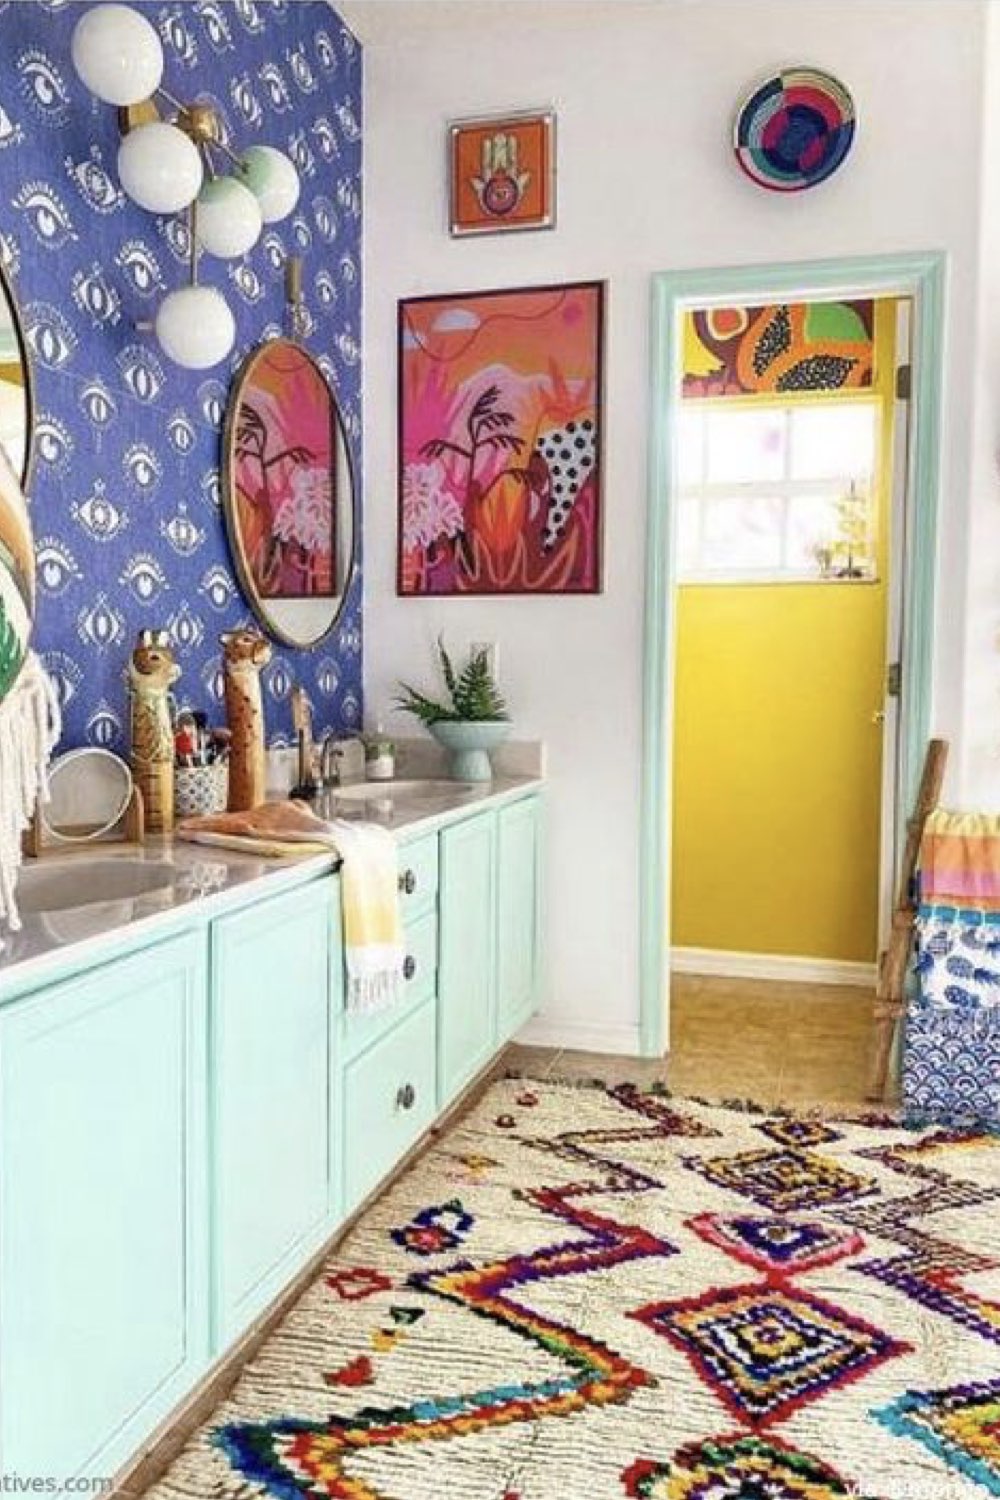 salle de bain decoration reussie exemple meuble sous-vasque coloré bleu vert aqua céladon papier peint motif mur jaune tapis ethnique